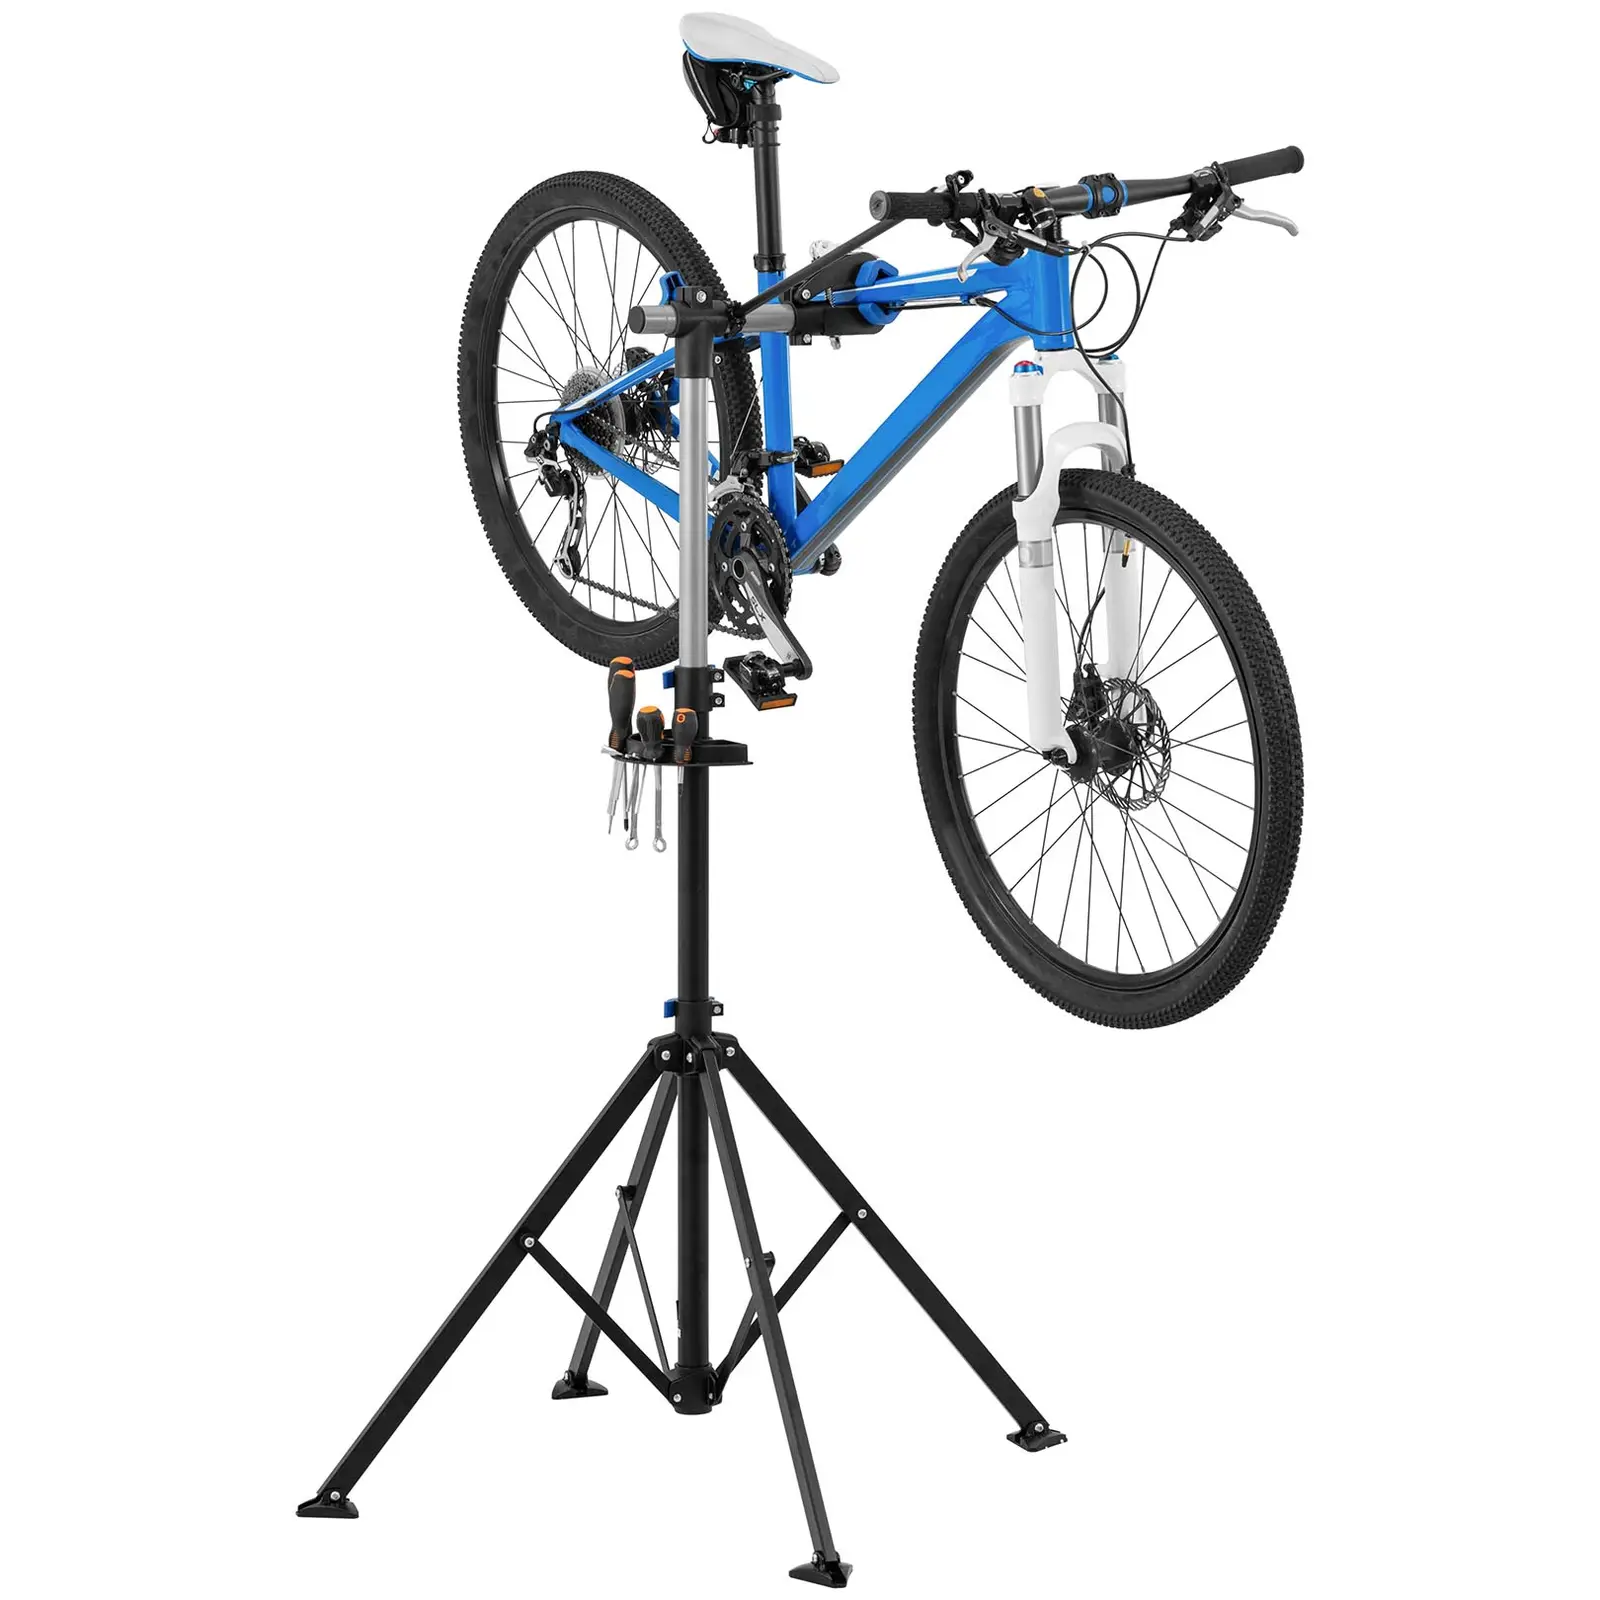 Fahrrad-Montageständer - 1080 - 1900 mm - klappbar - bis 25 kg - 4 Beine